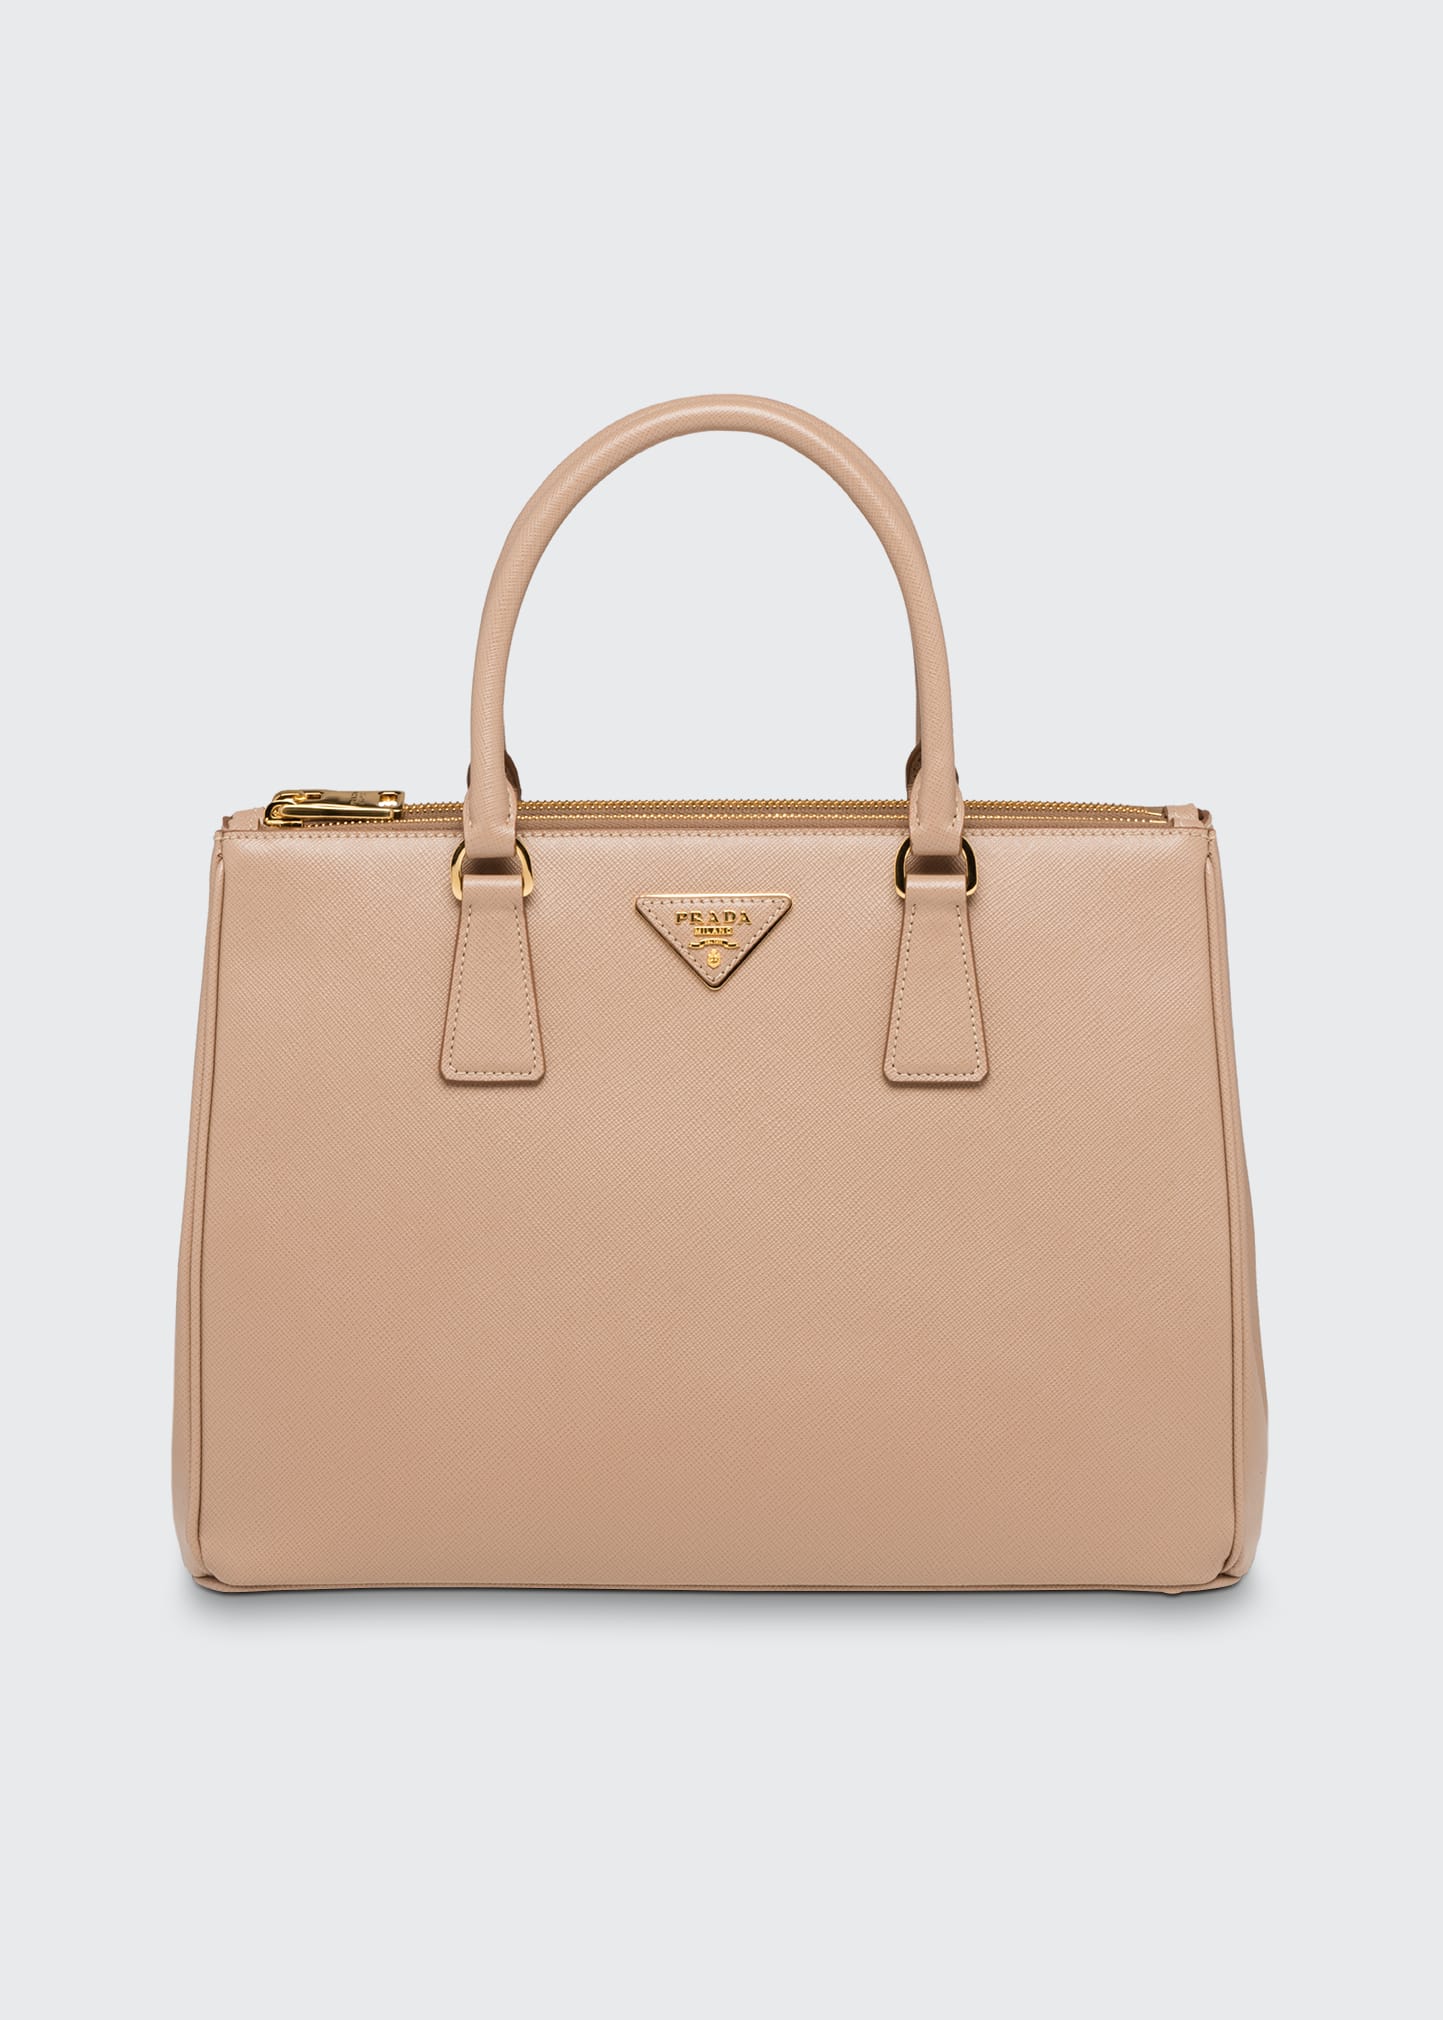 Prada, Bags, Prada Saffiano Galleria Bag Size Medium